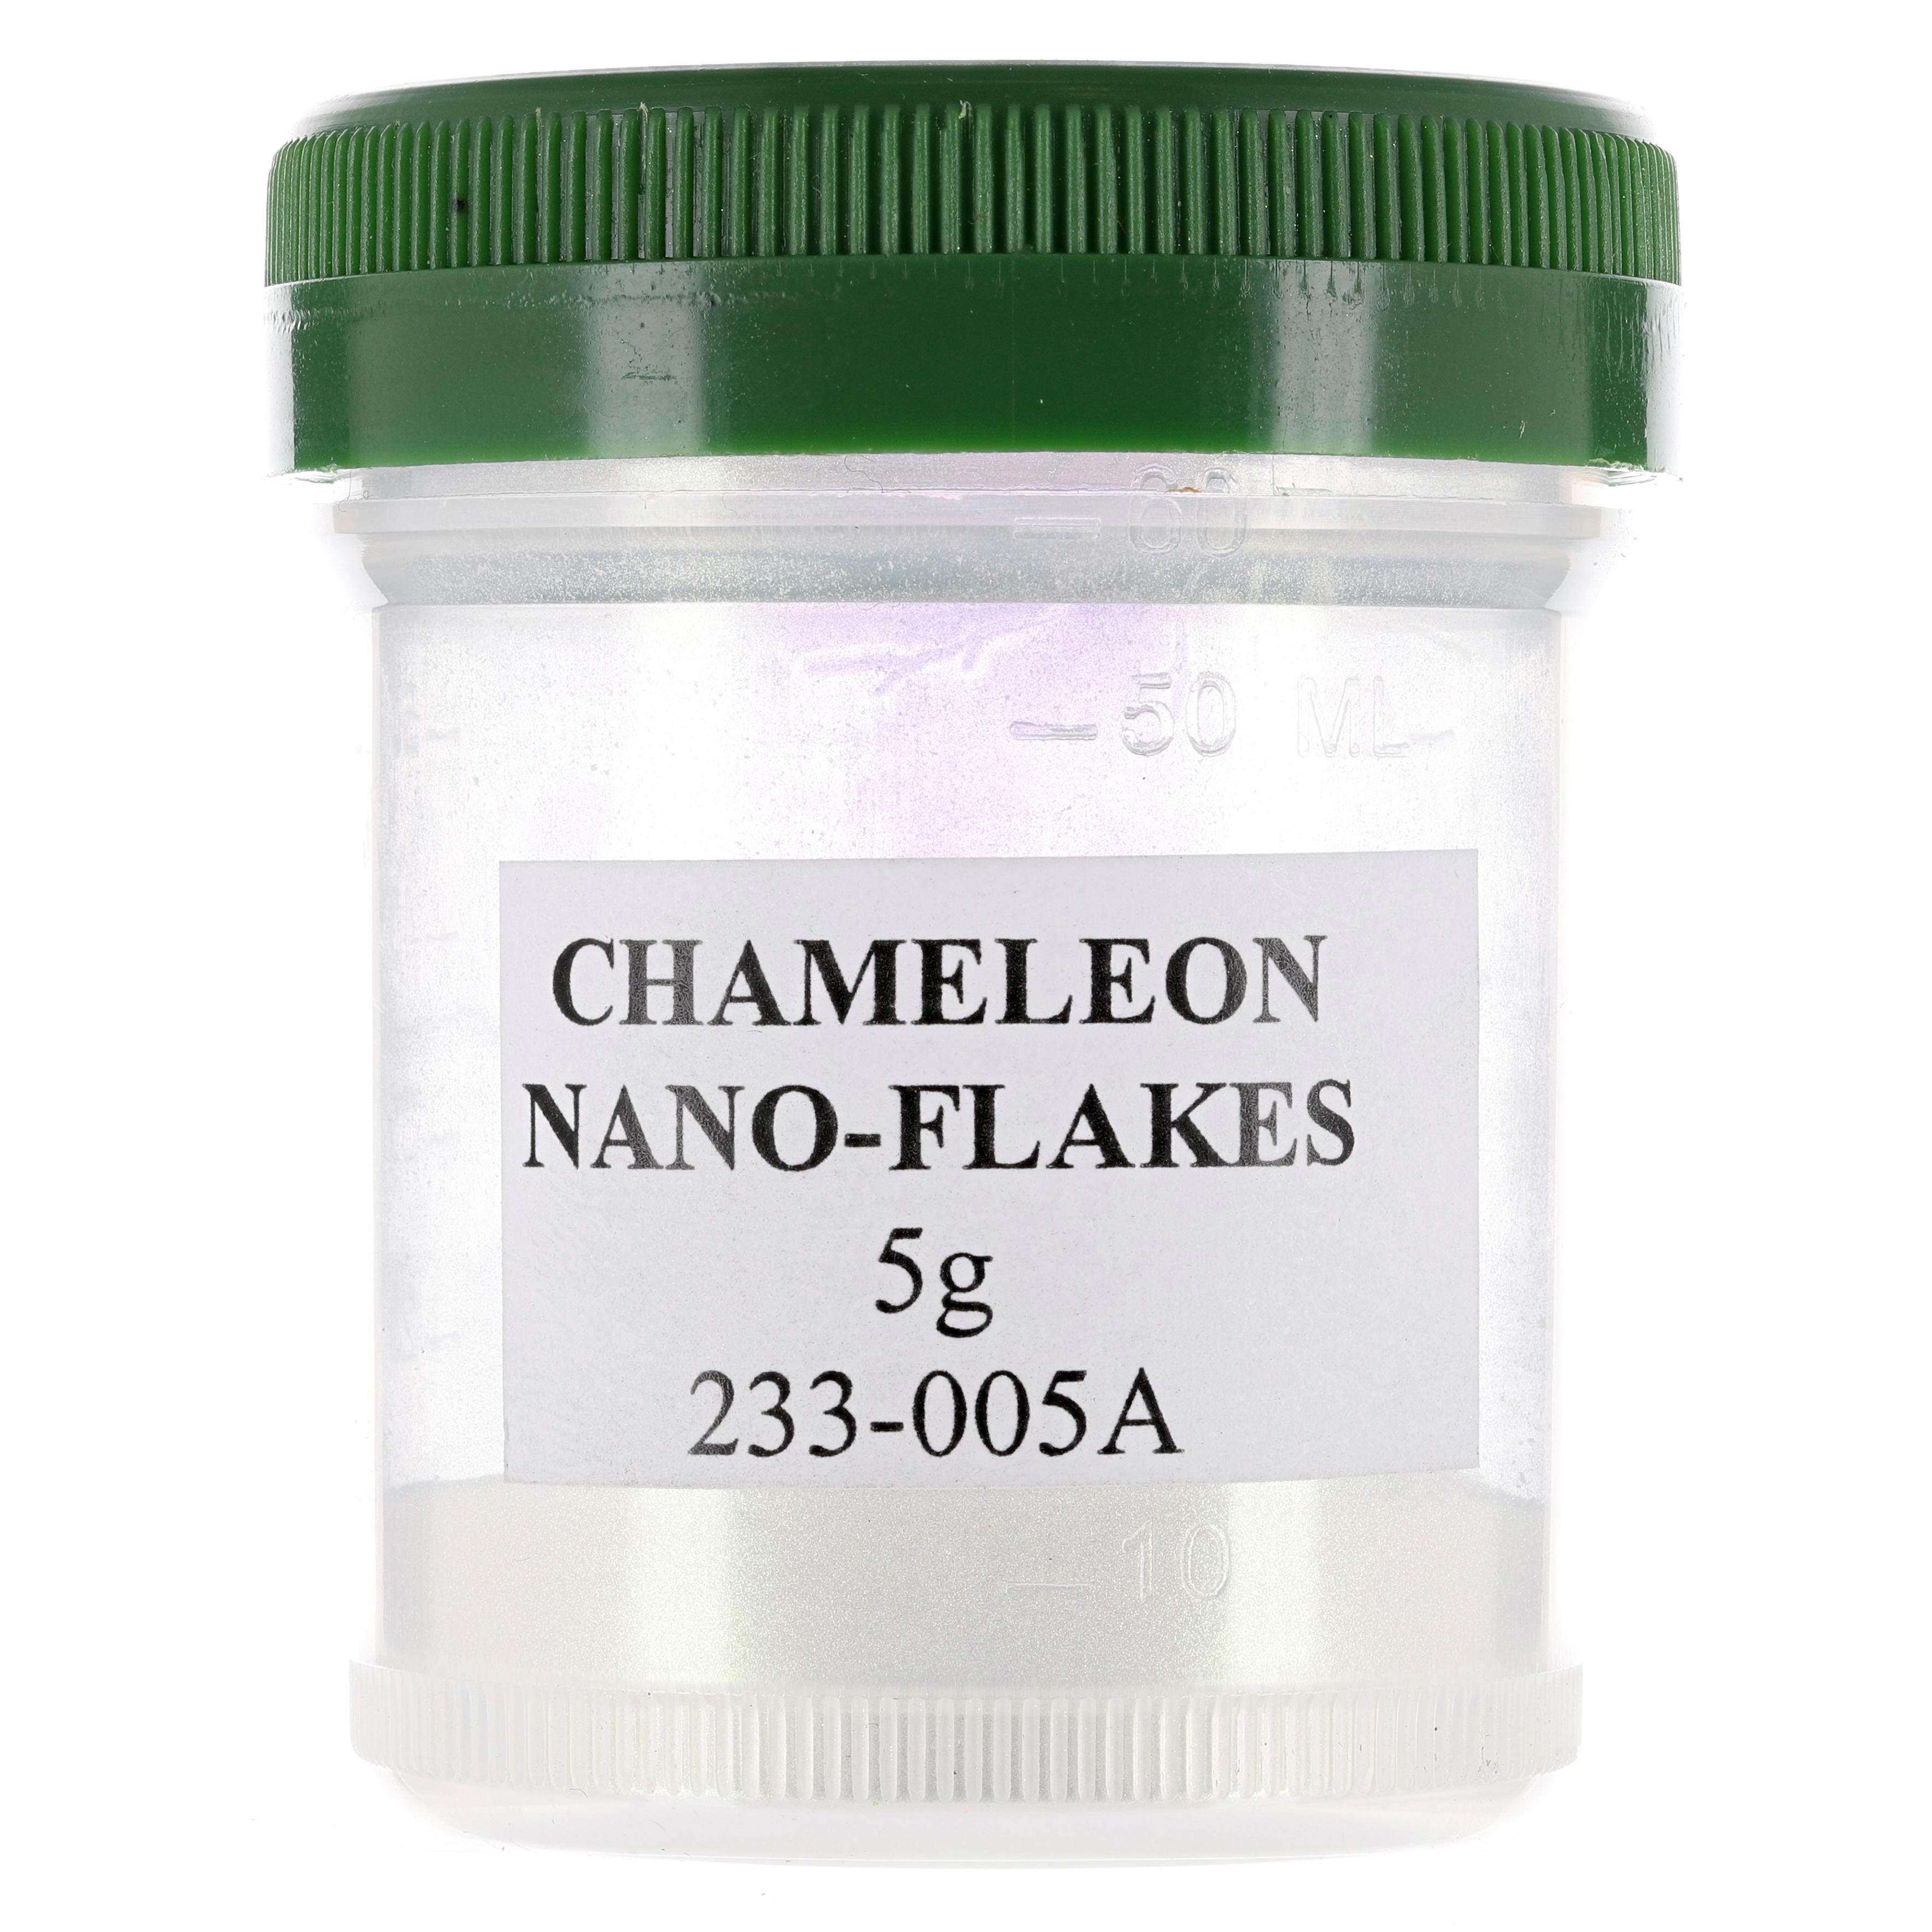 Chameleon Nano-flakes 5g